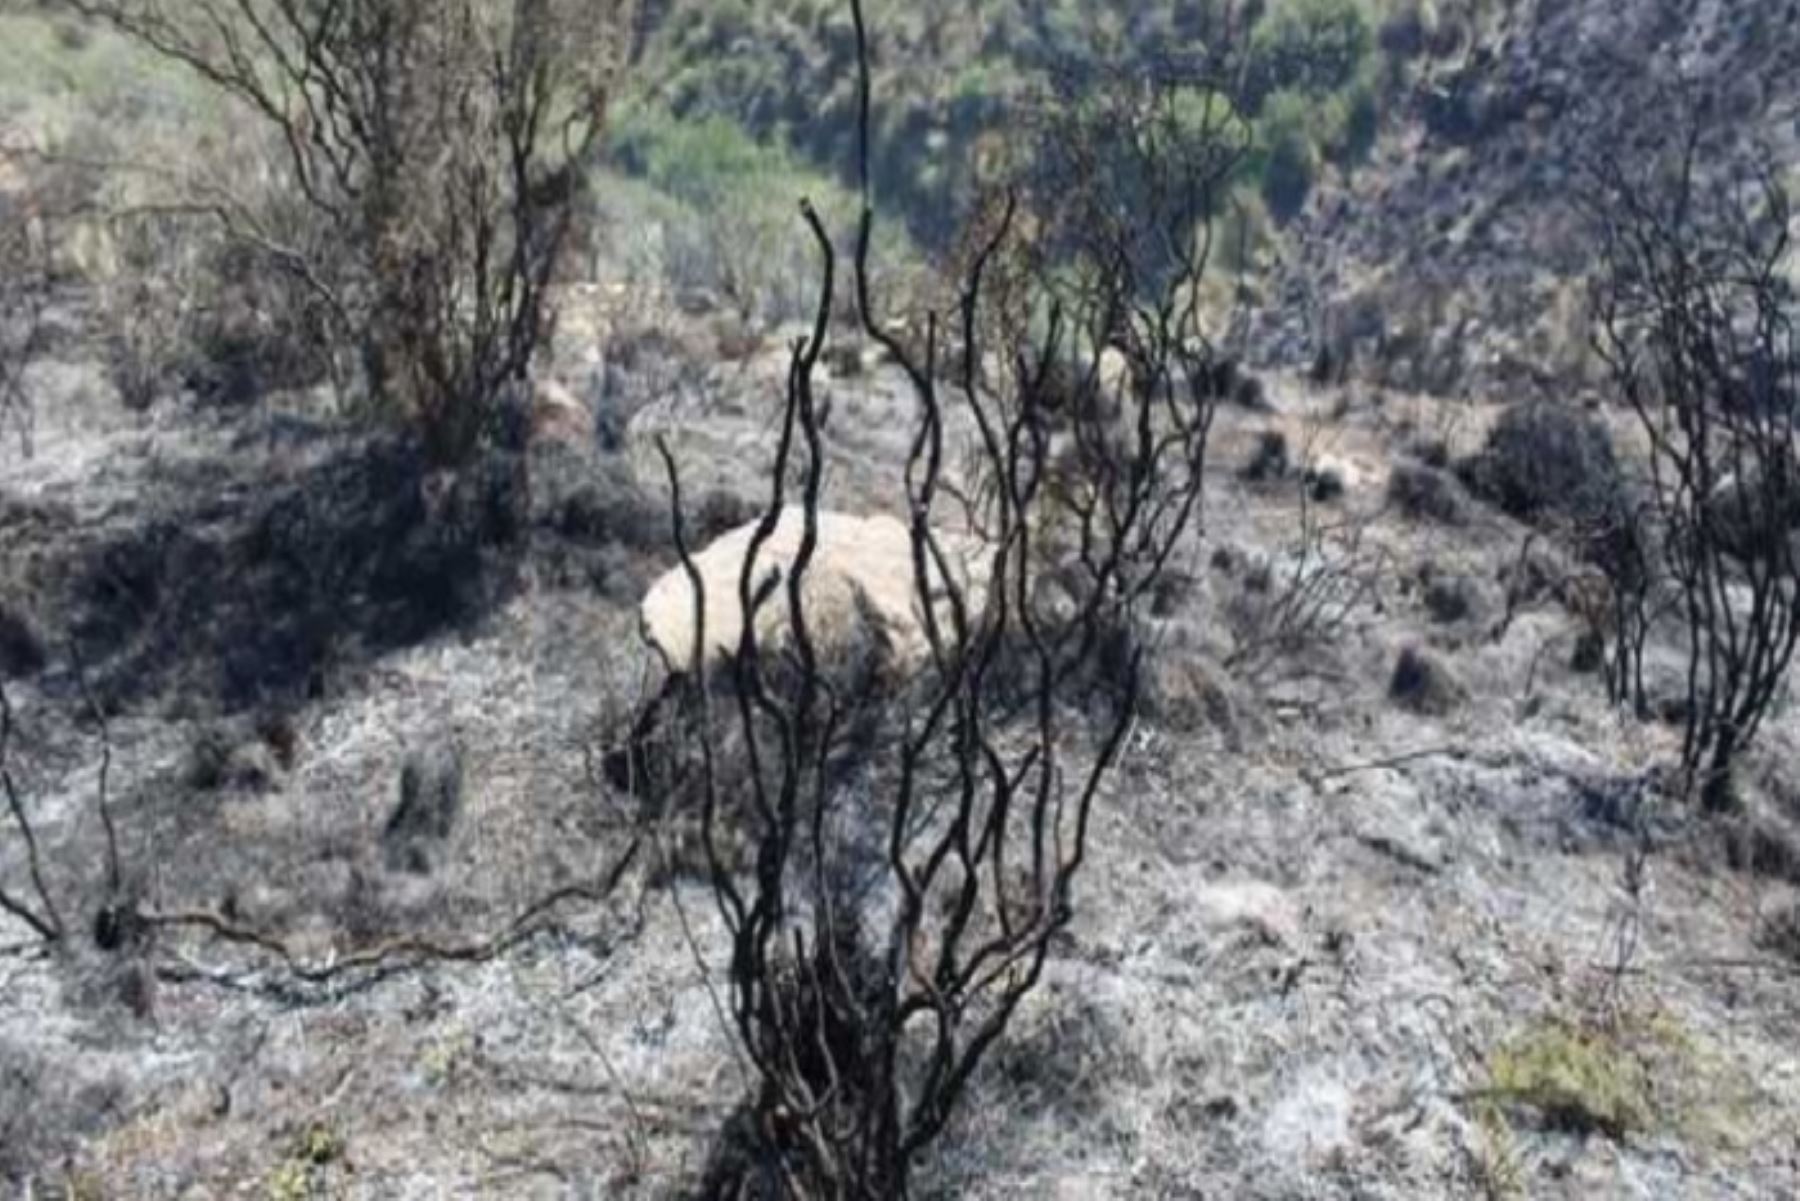 El fuego devoró al rededor se 24 hectáreas de fauna y flora silvestre. No obstante, se espera un informe detallado de la plataforma de defensa civil. ANDINA/Difusión